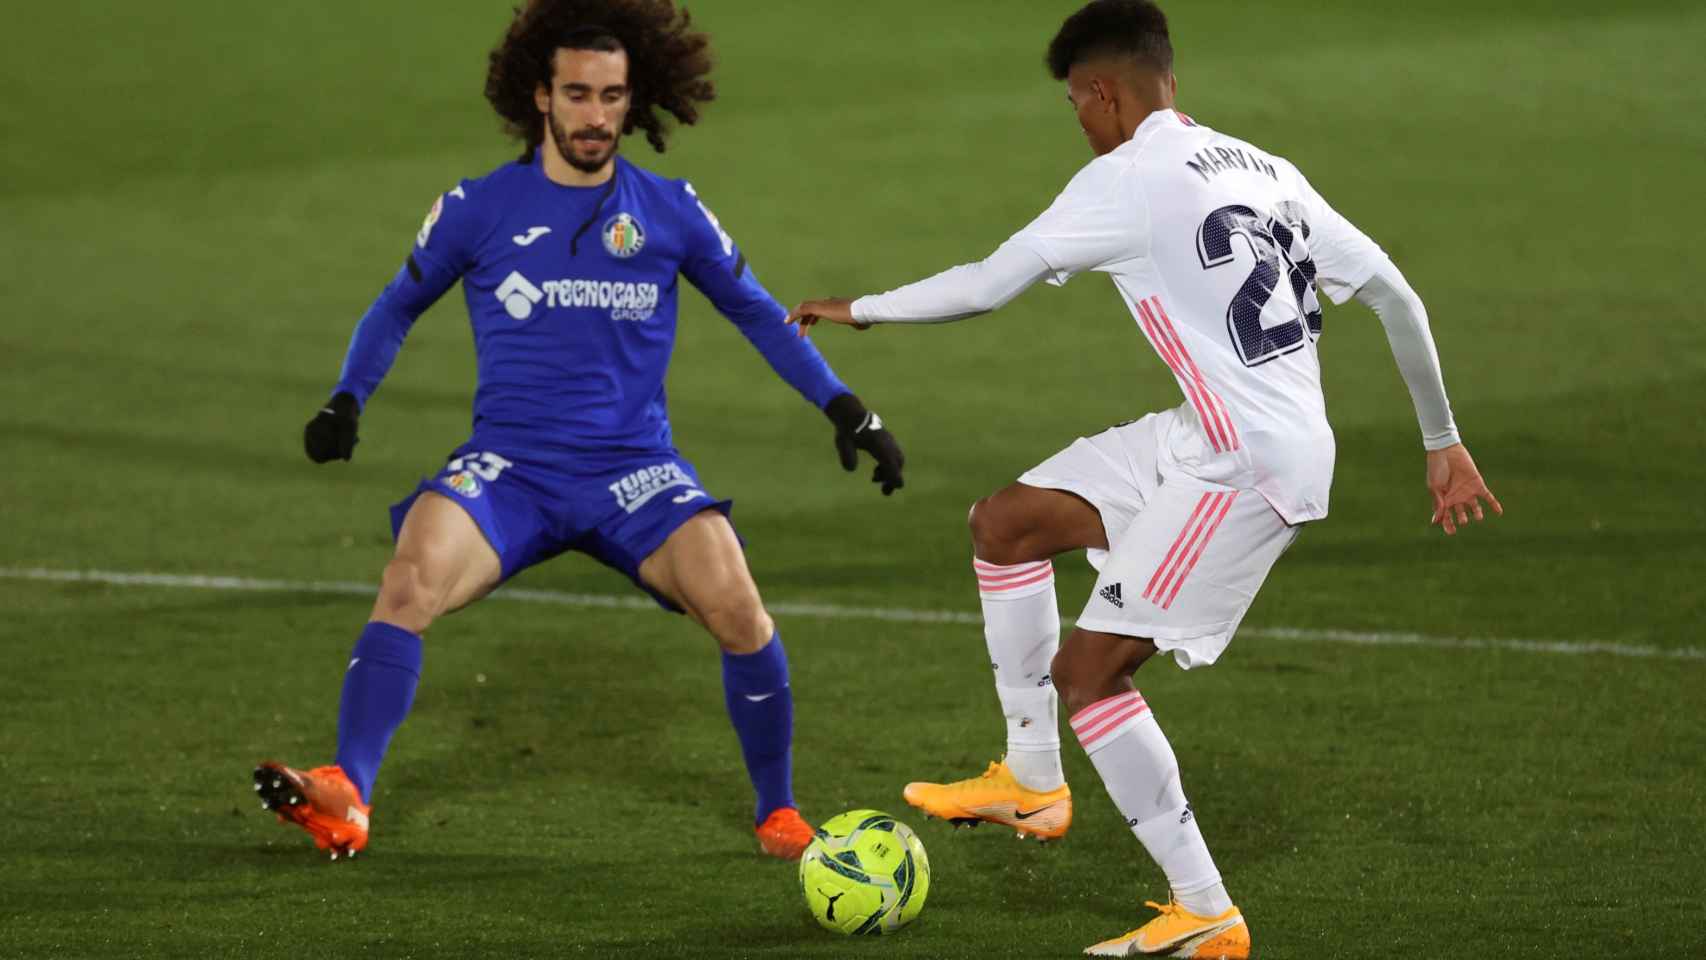 Marvin contra Cucurella en el Real Madrid-Getafe / EFE